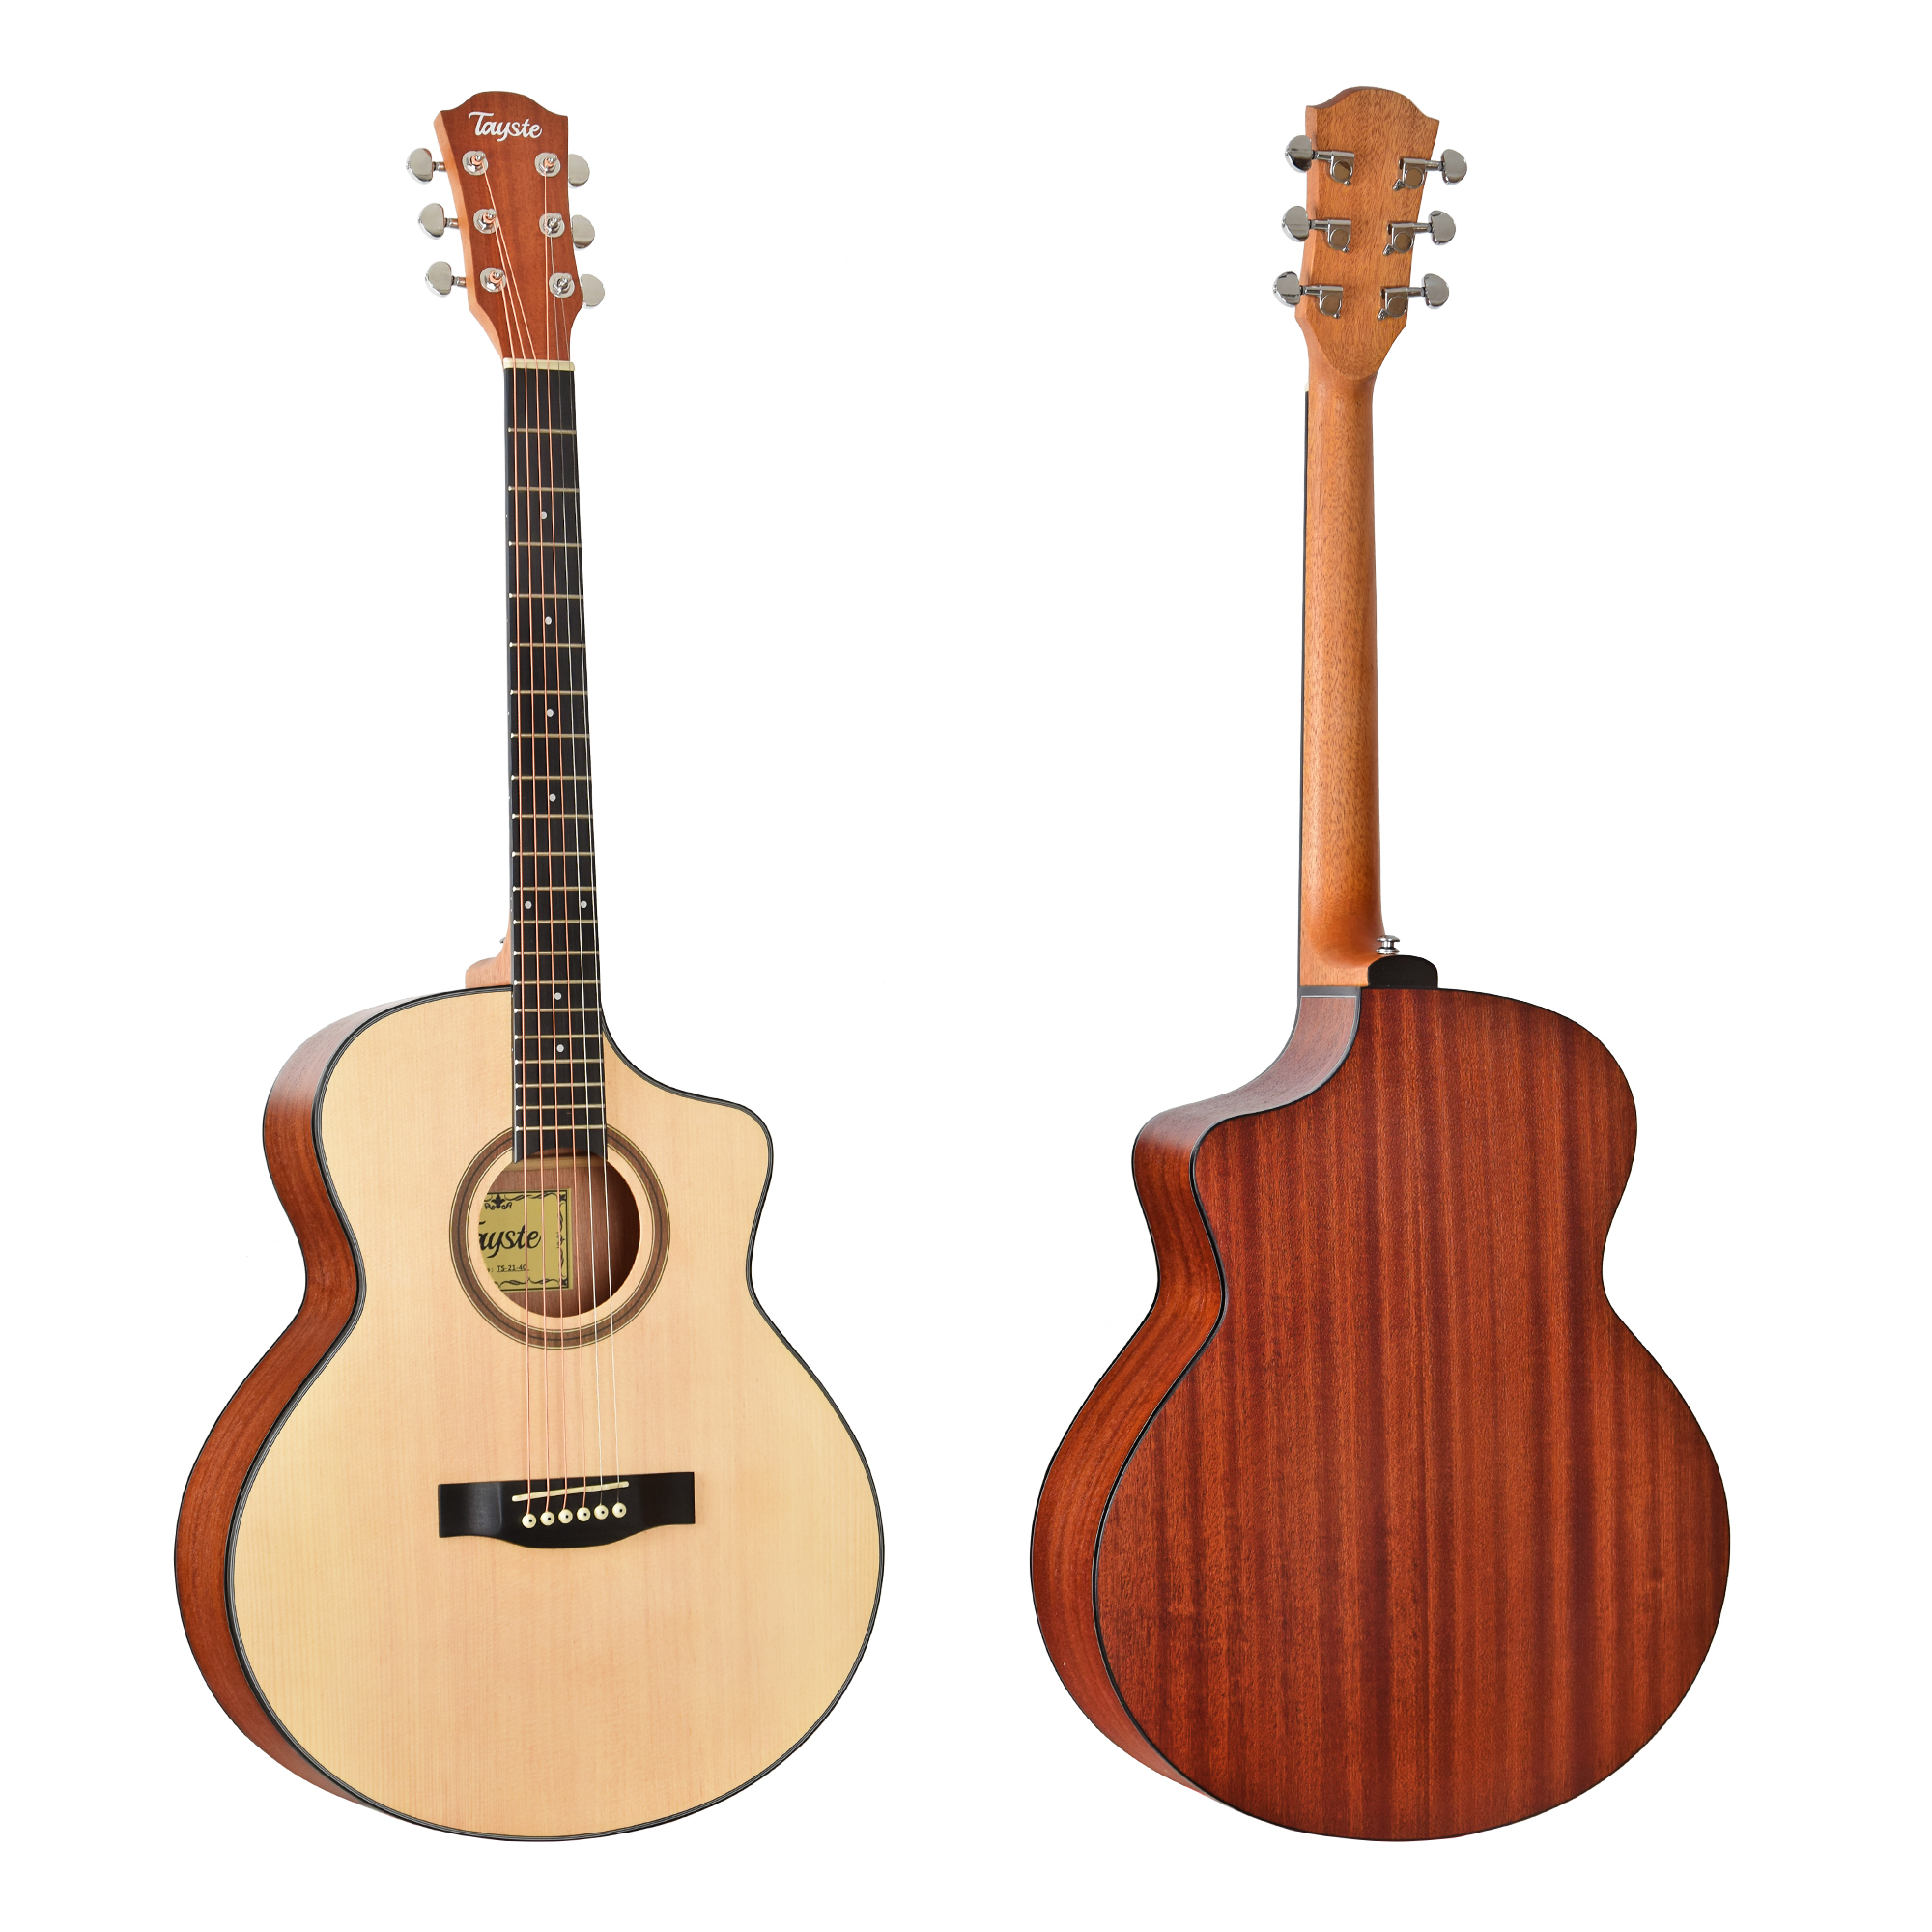 Guitarra barata TS-21-40